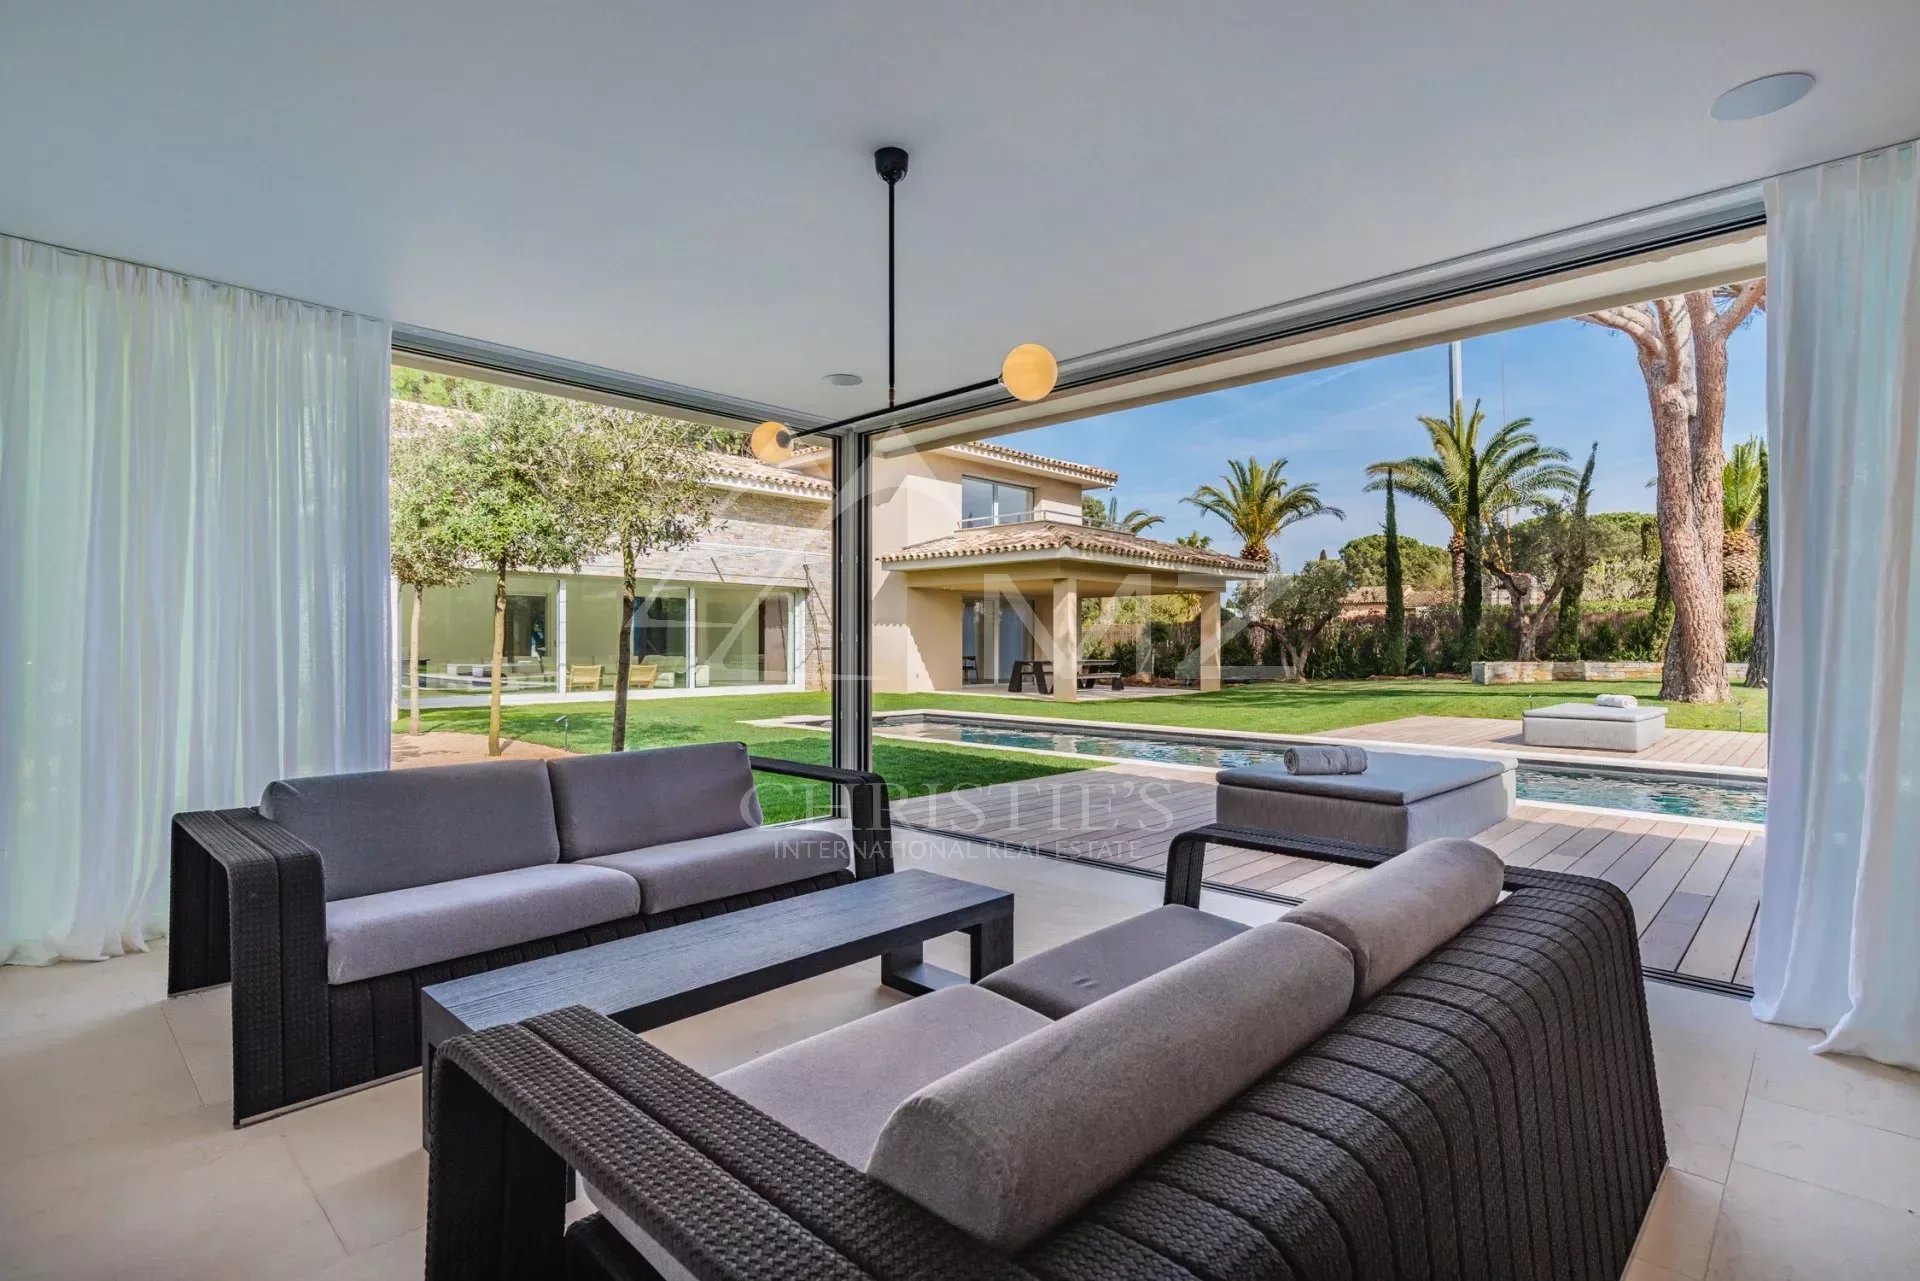 Saint-Tropez - Wunderschöne neue provenzalische/zeitgenössische Villa